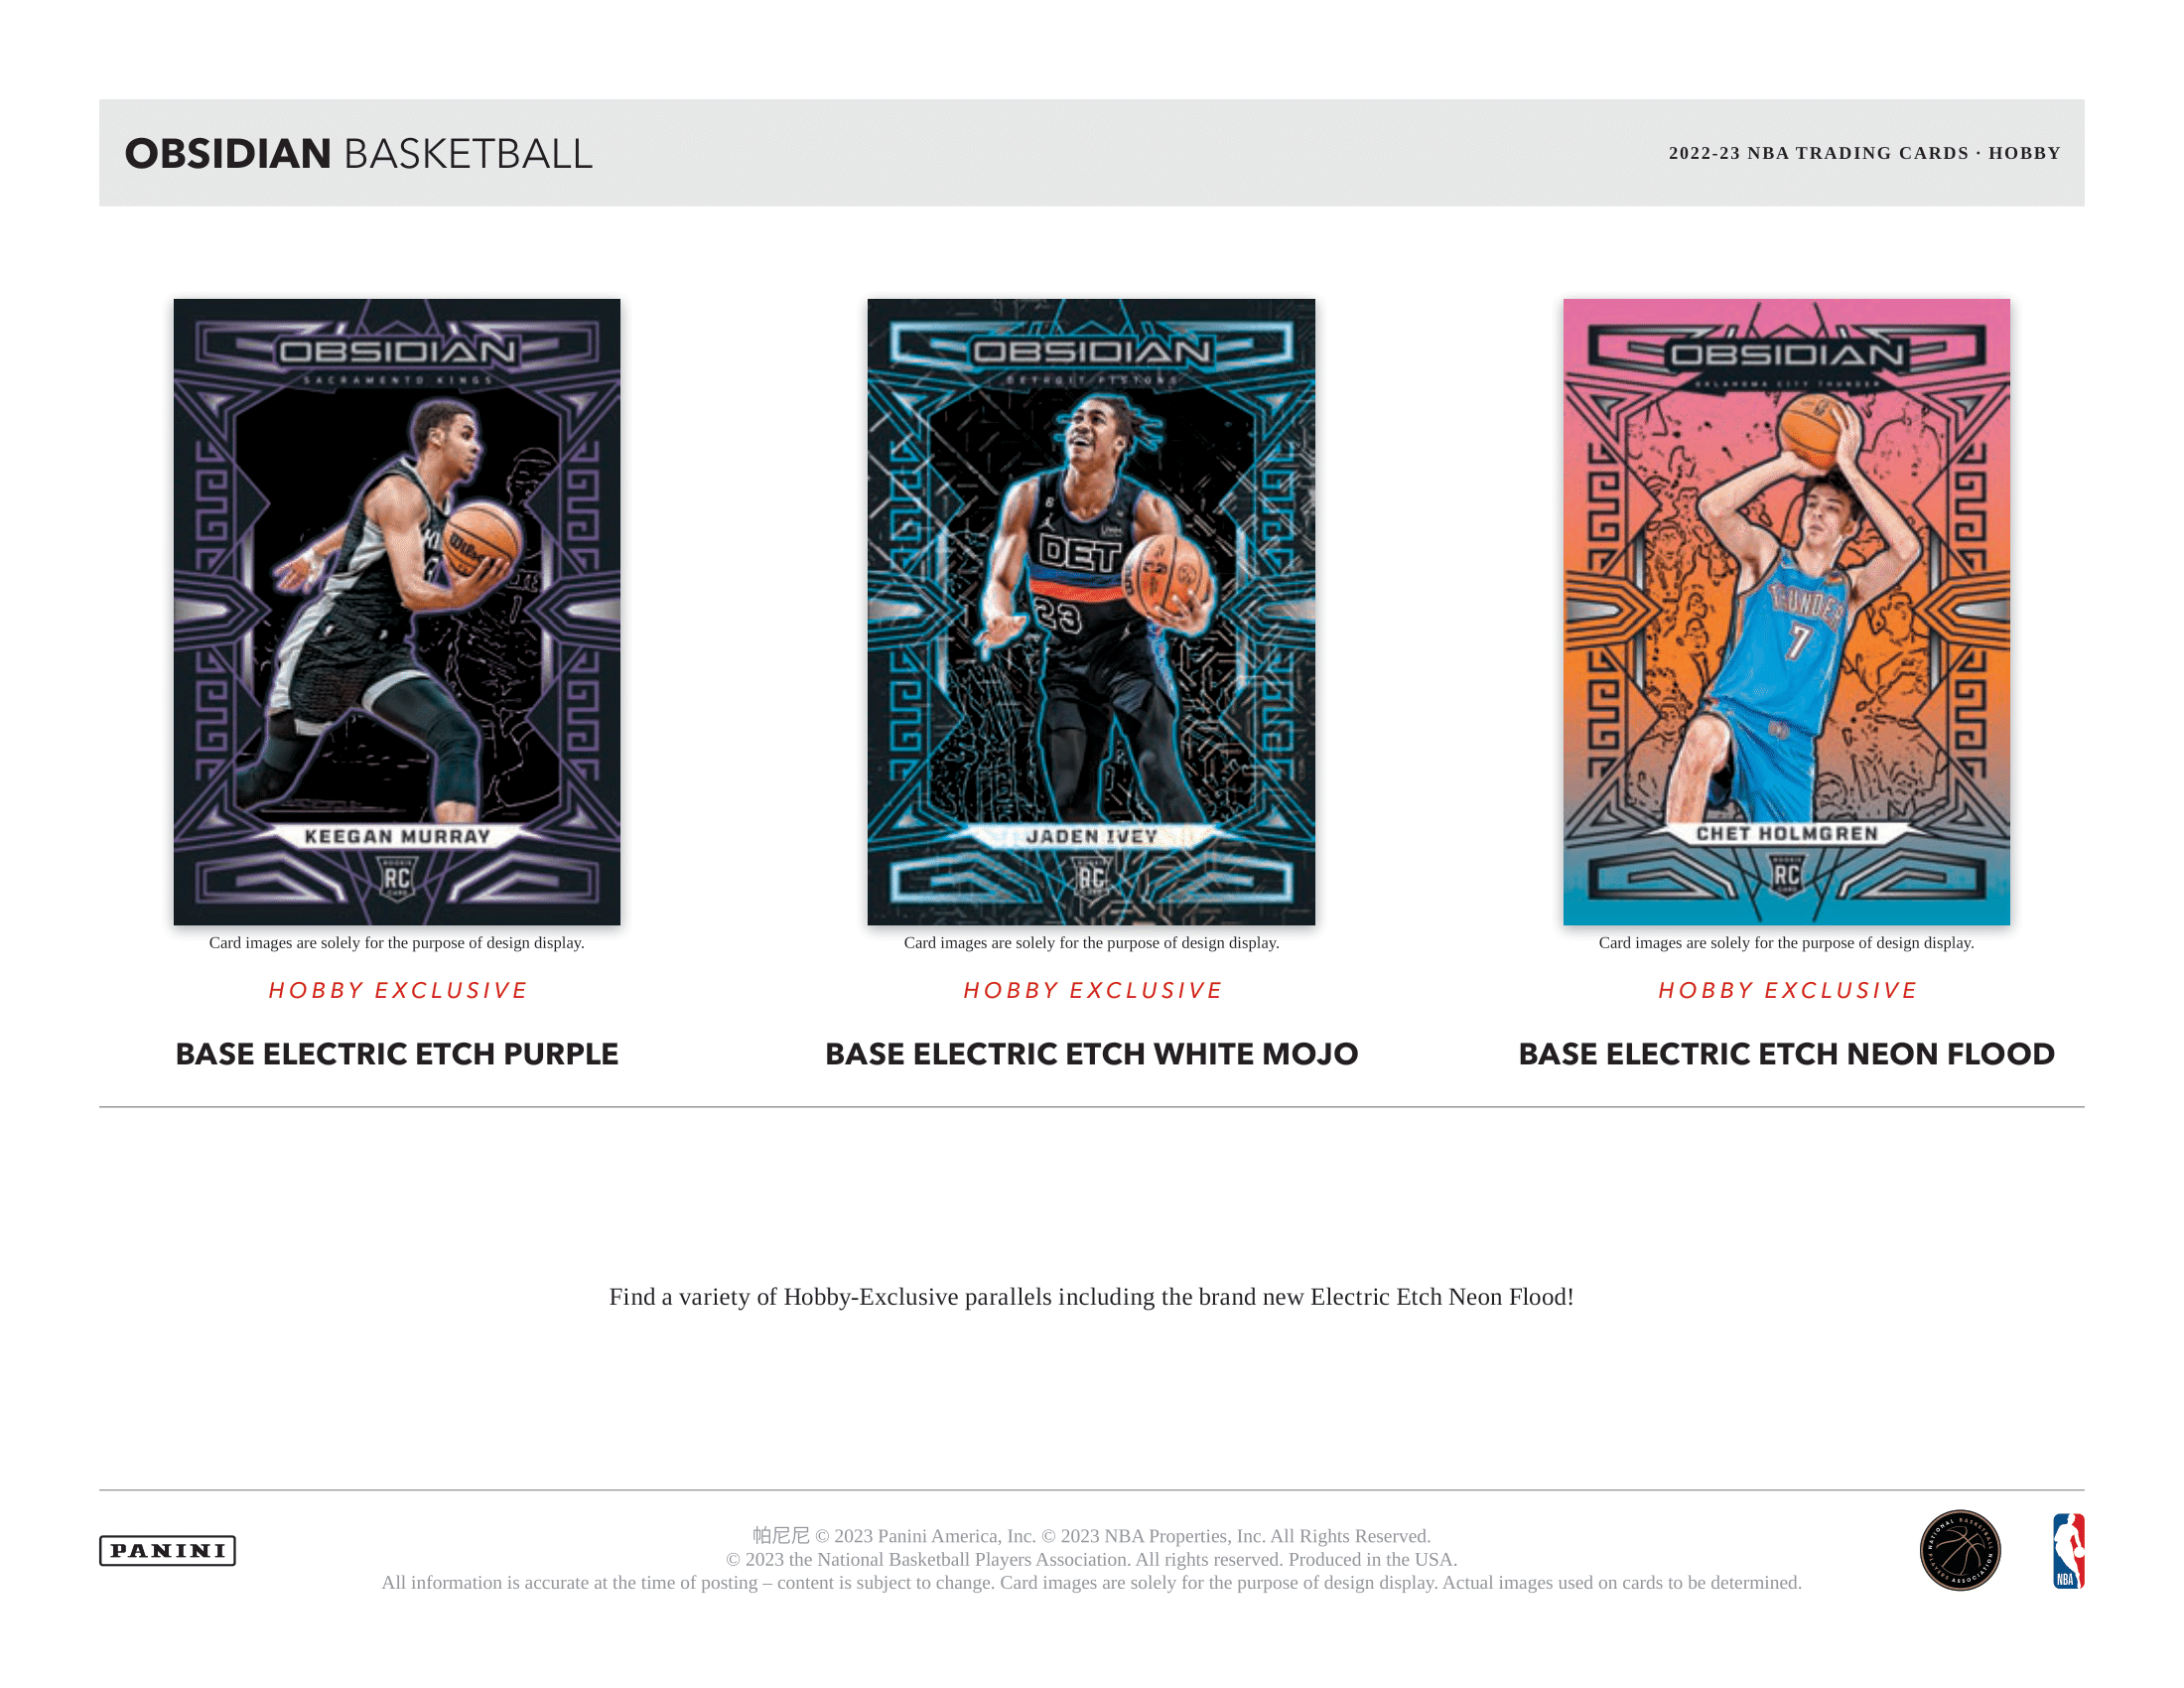 Panini - 2022/23 Obsidian Basketball (NBA) - Hobby Box - The Card Vault